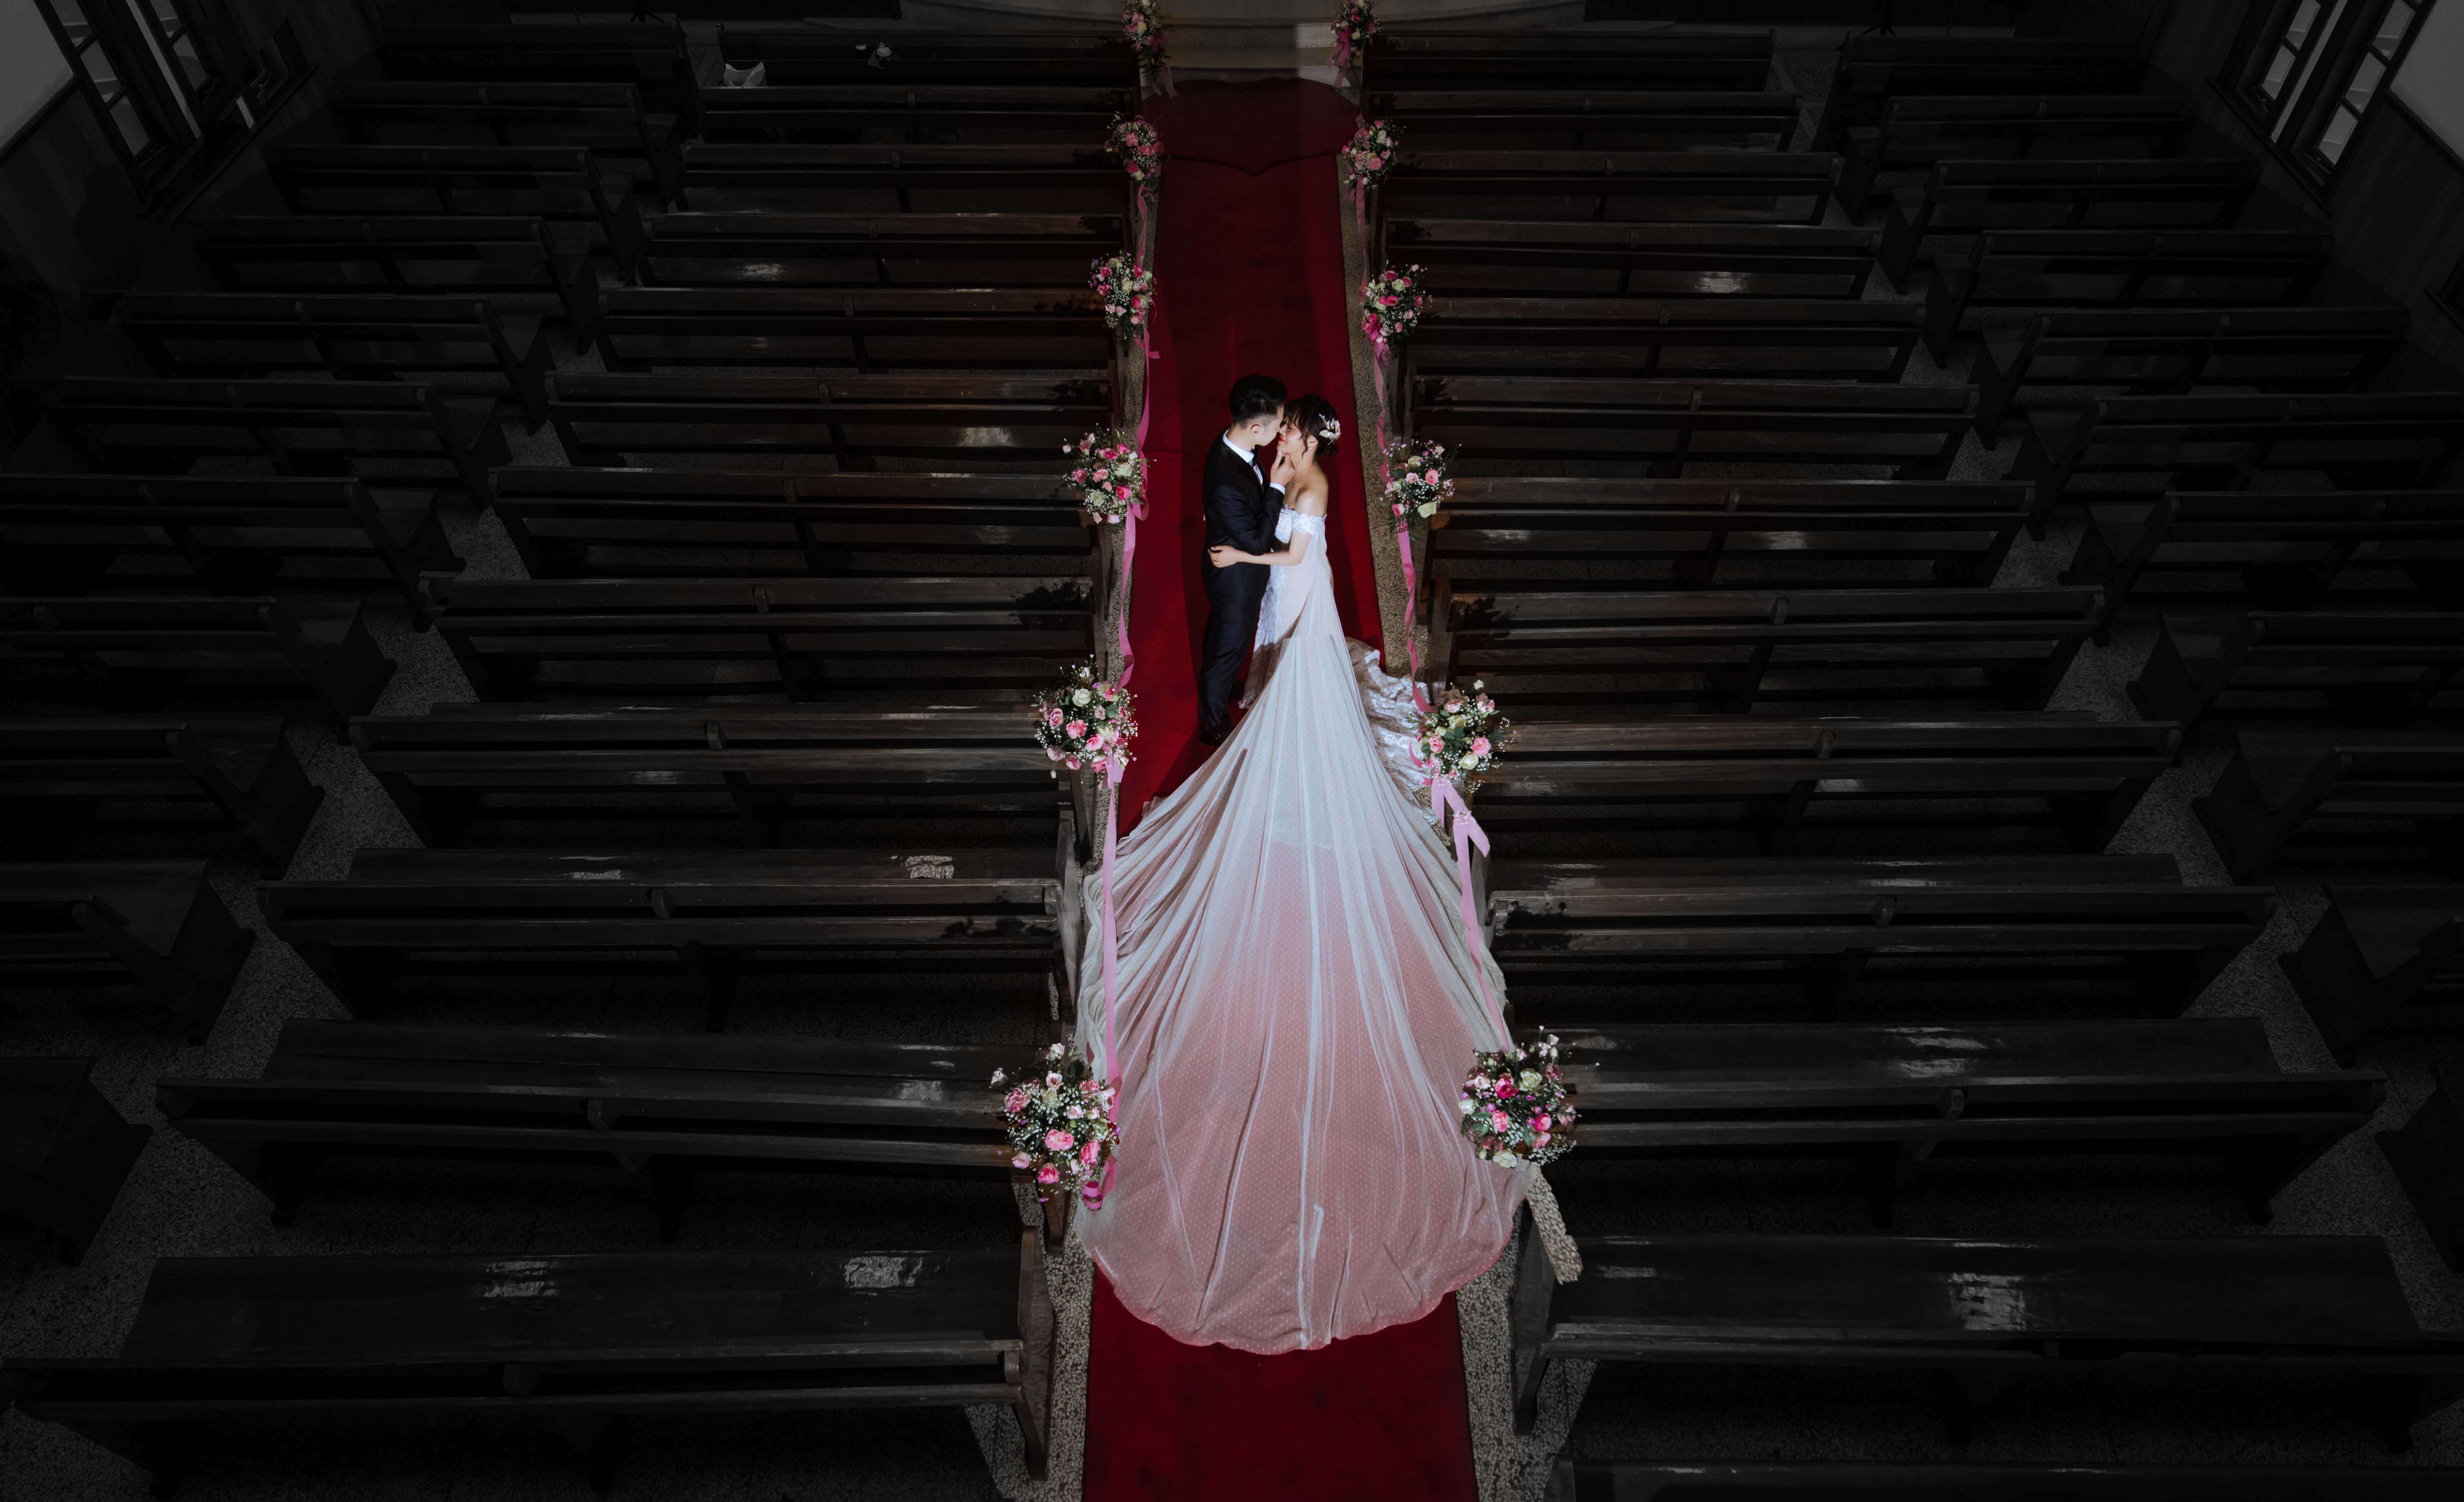 樂芙爾婚紗.婚禮的婚禮作品圖片